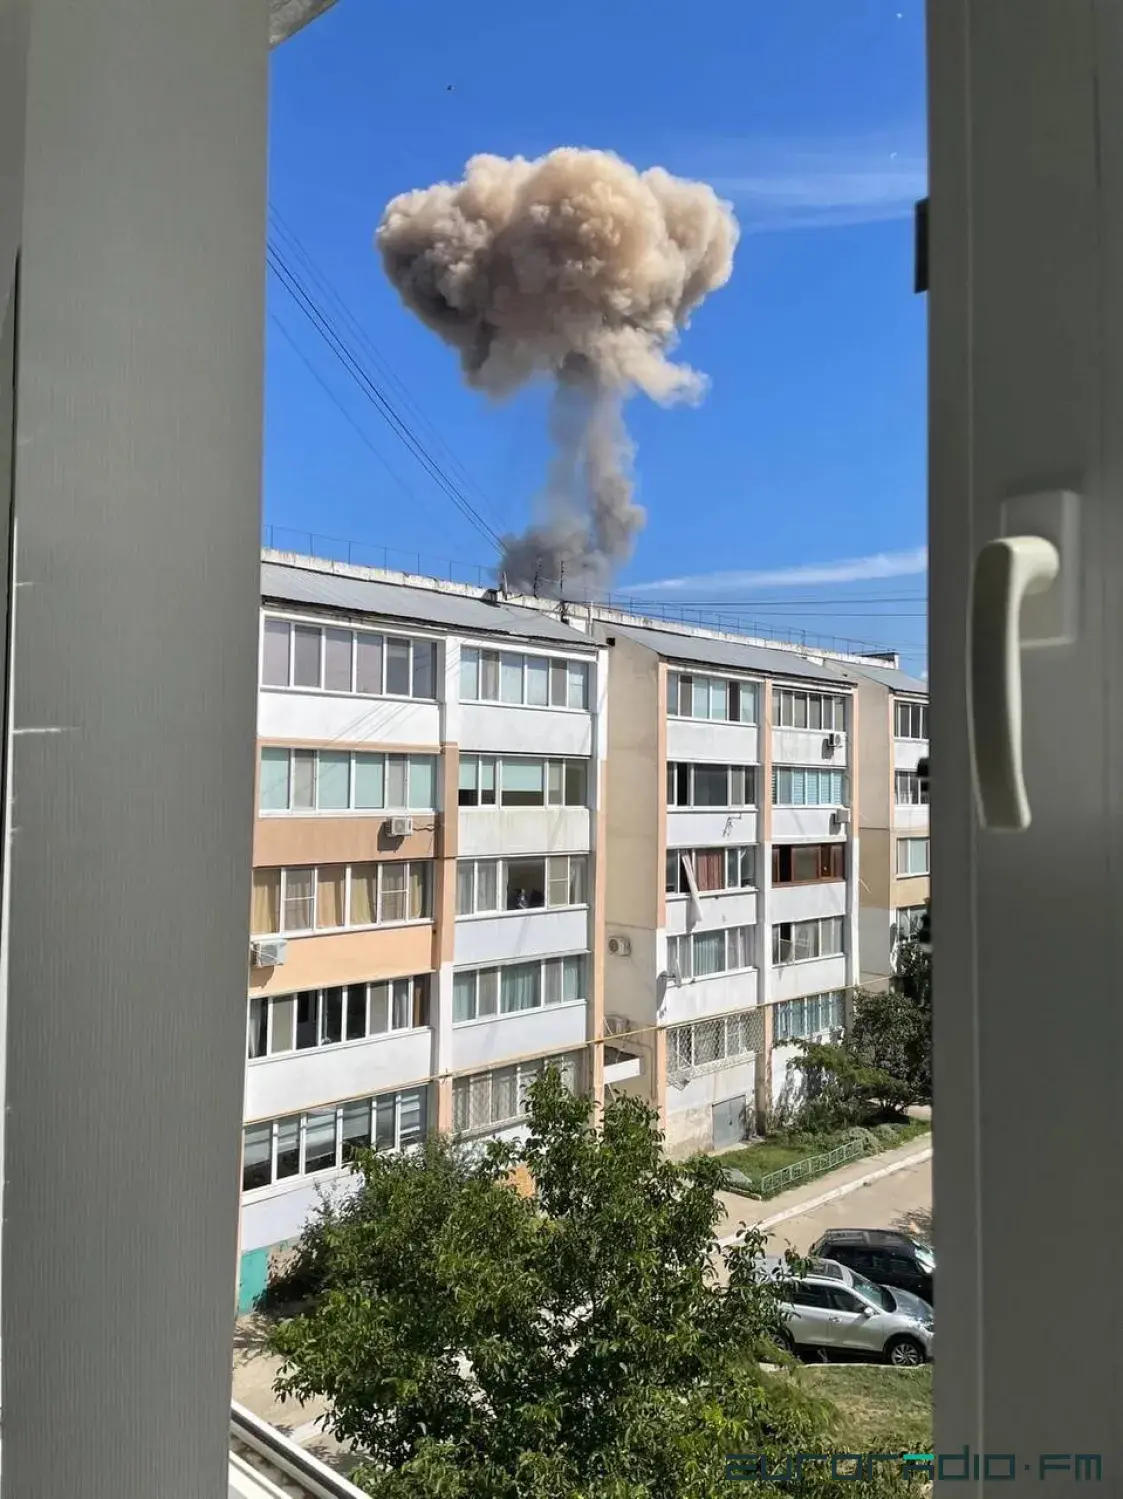 У Крыме адбылося некалькі выбухаў каля вайсковага аэрадрома Навафёдараўка